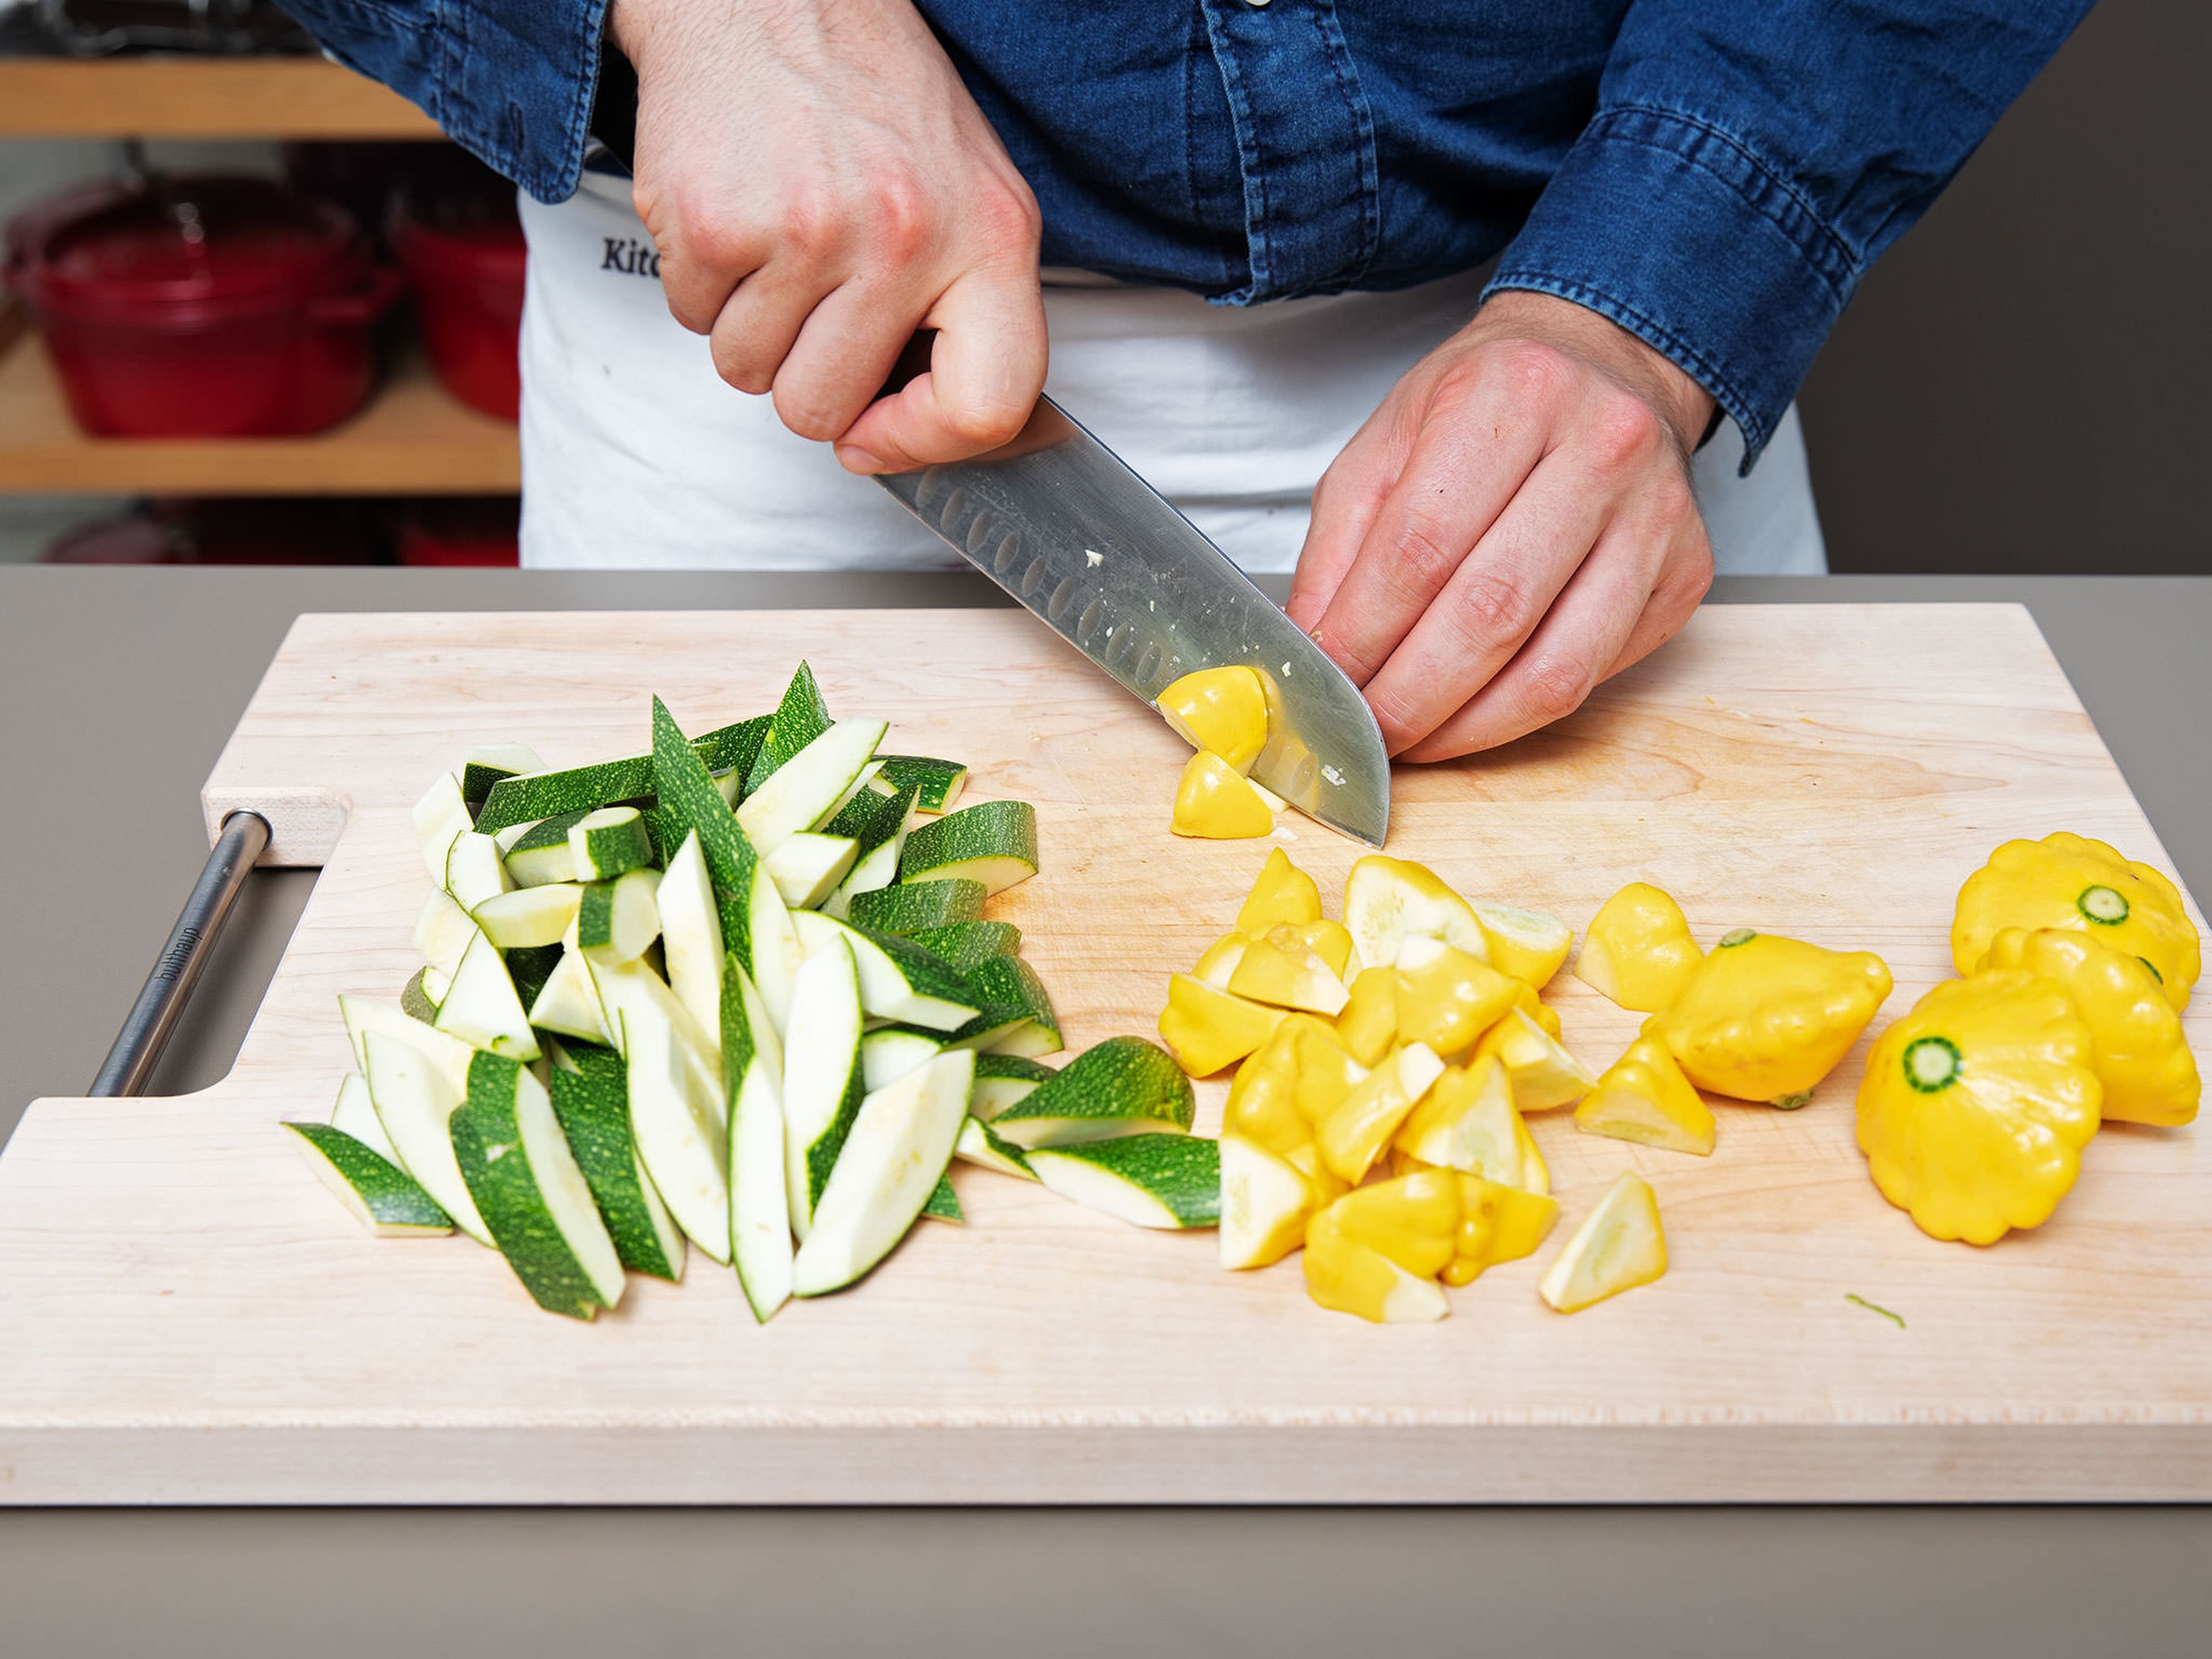 Backofen auf 160°C vorheizen. Sommerkürbis und Zucchini klein schneiden und zusammen mit den Kirschtomaten in eine Auflaufform geben.